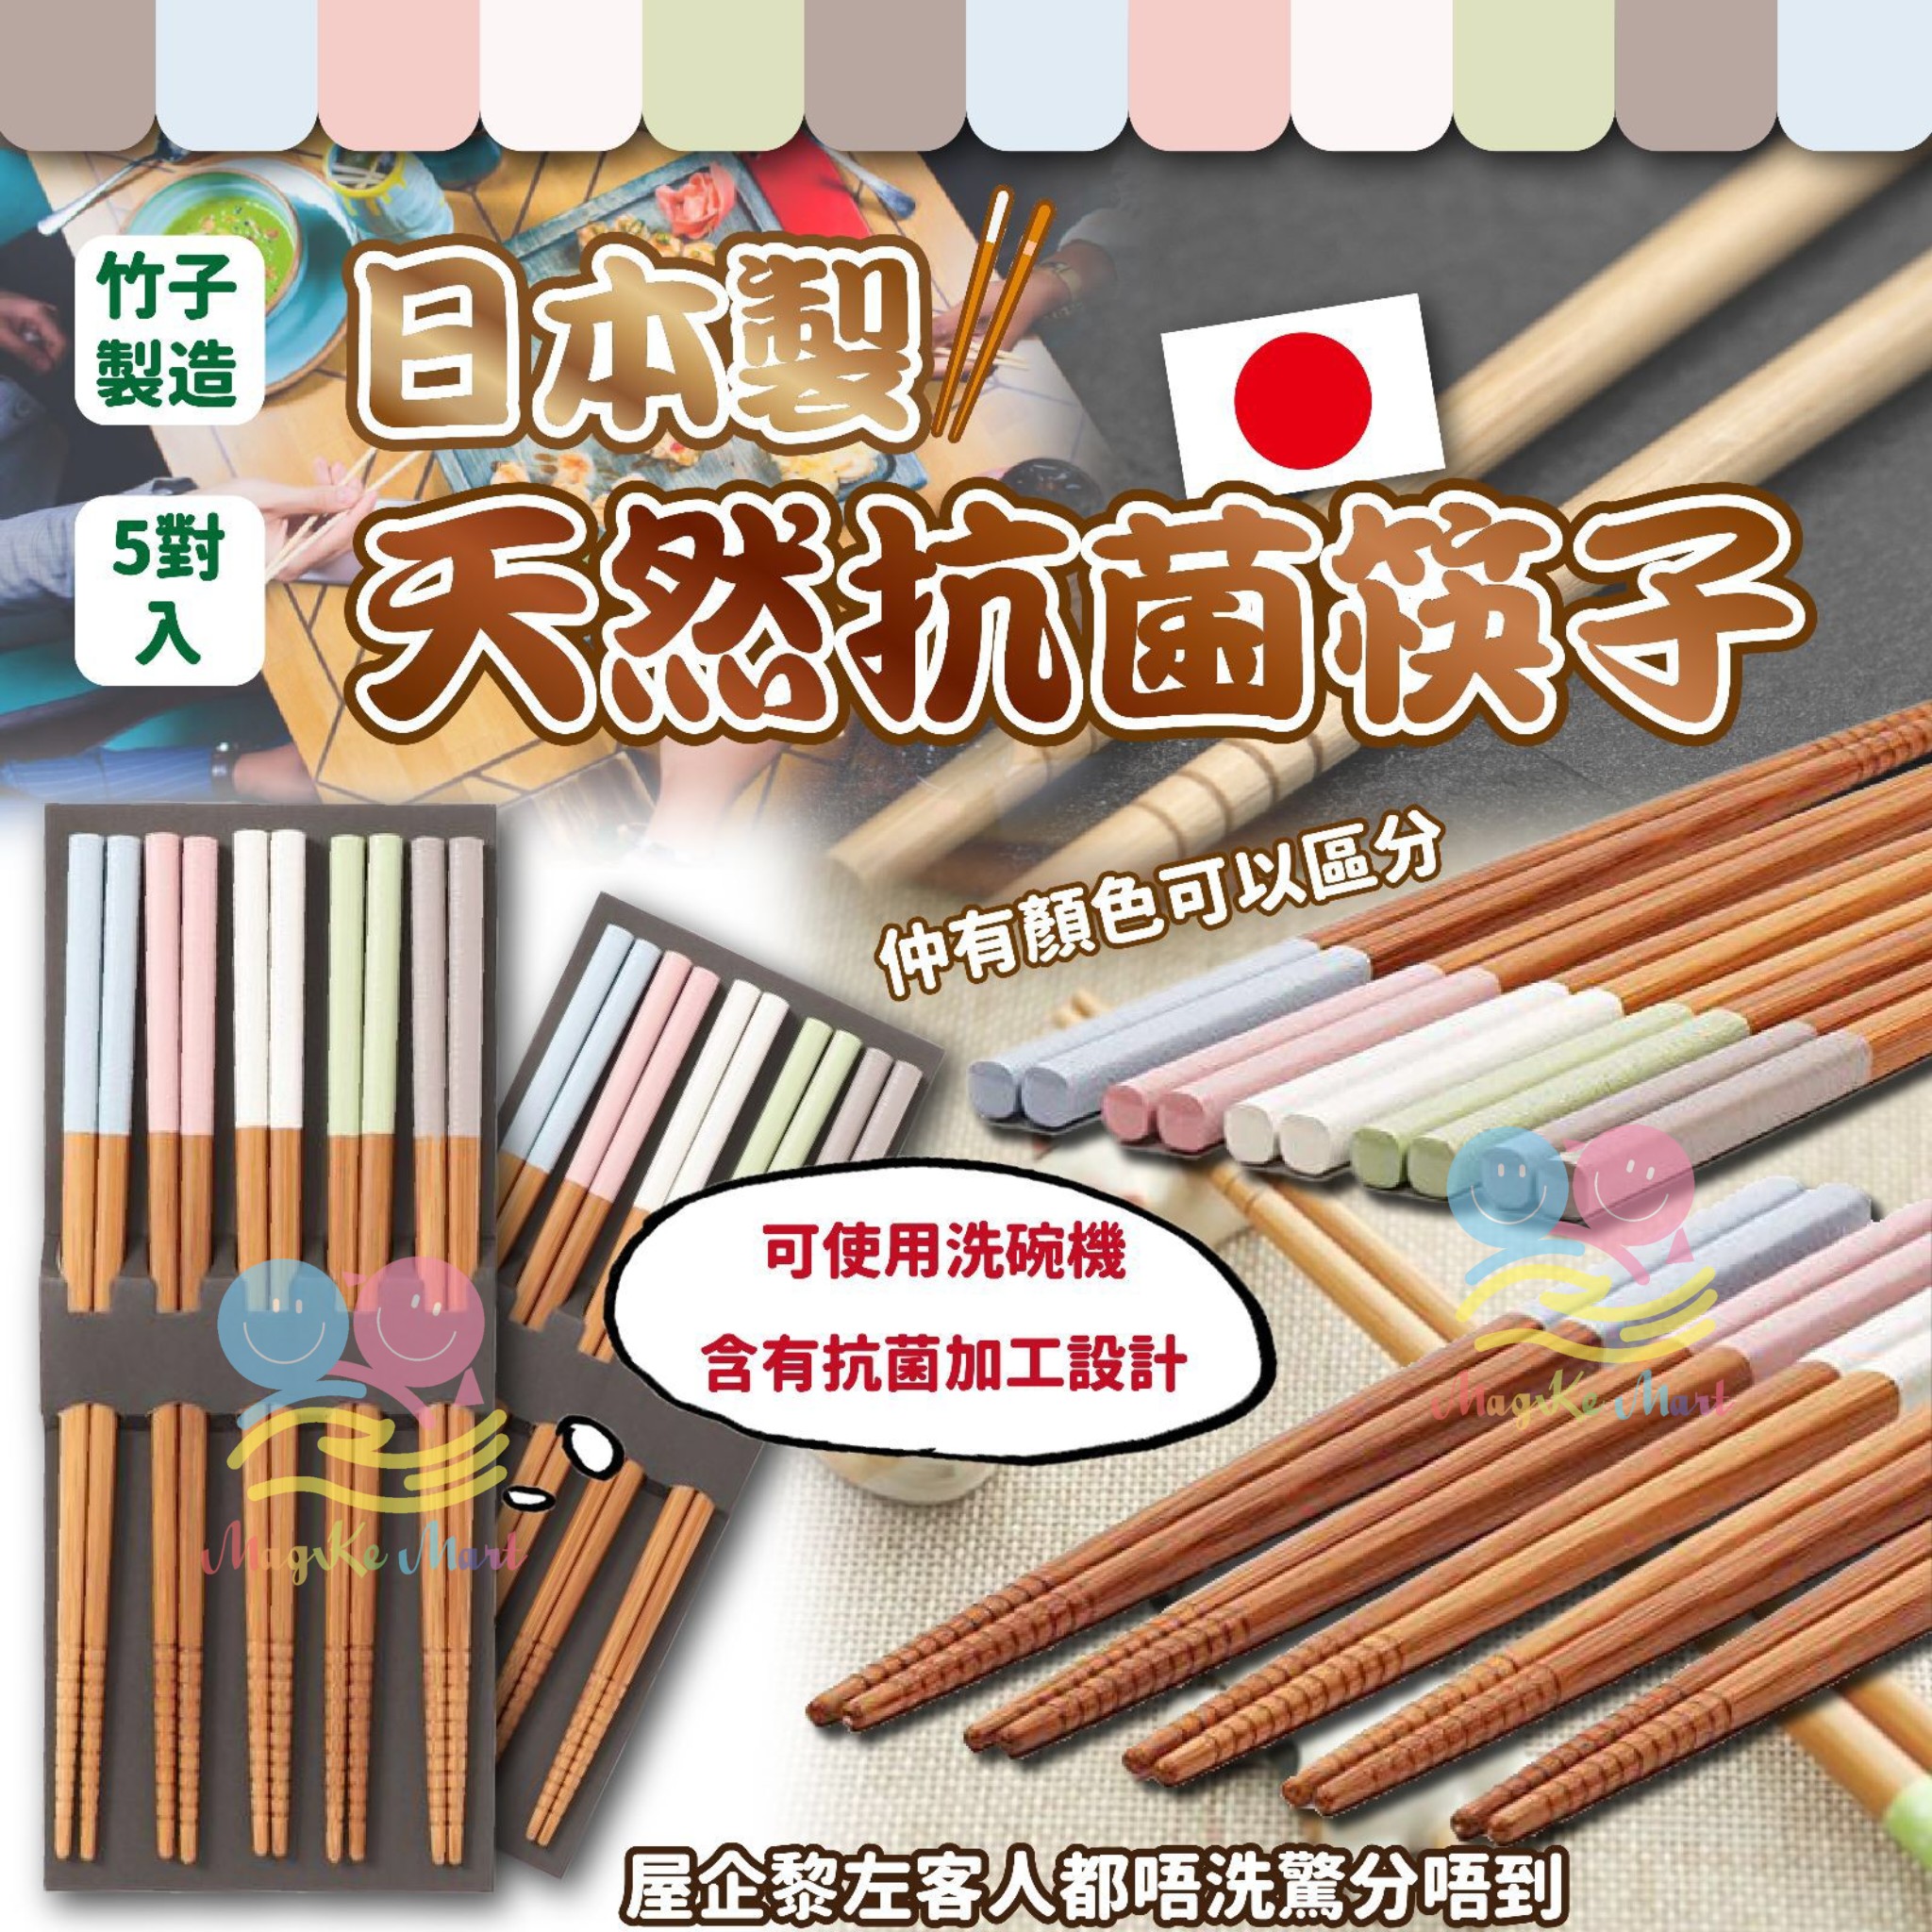 日本製天然竹子抗菌筷子(1套5對入)